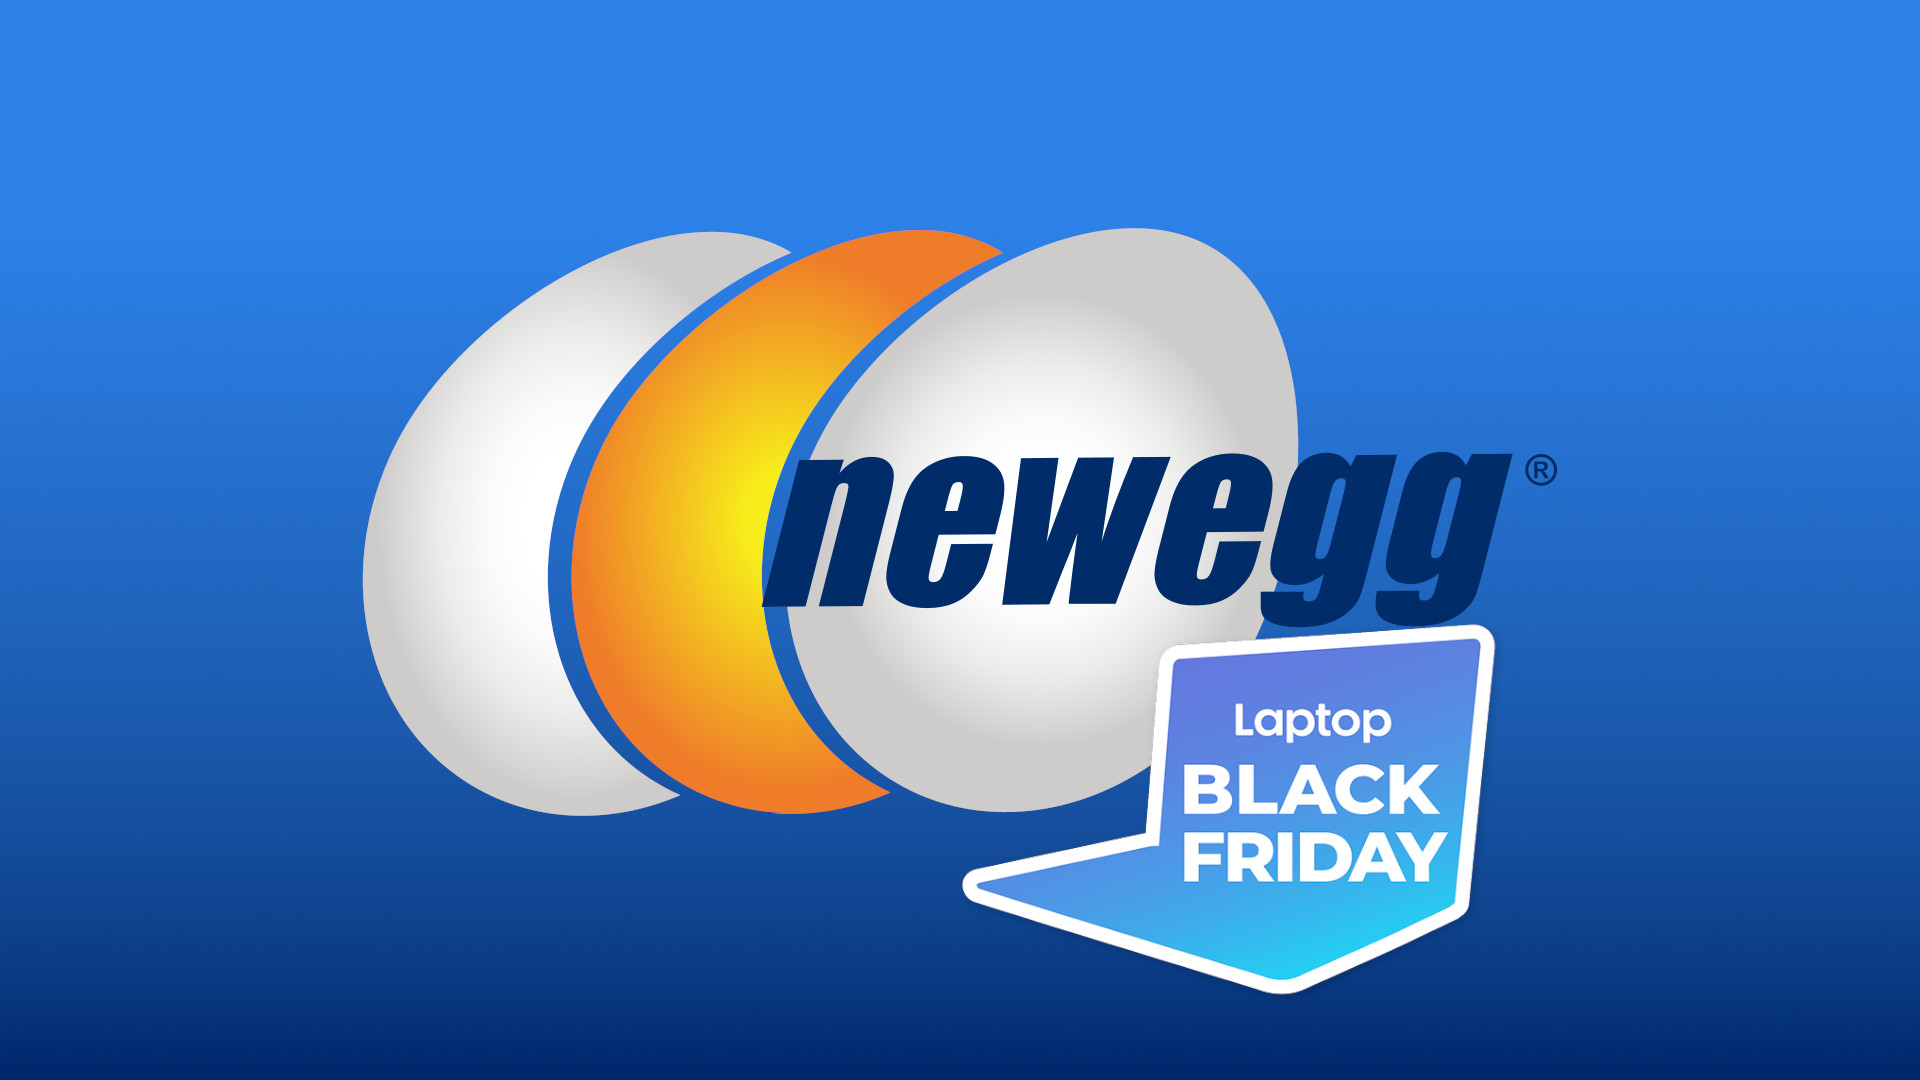 PC Gaming Black Friday Deals at Newegg